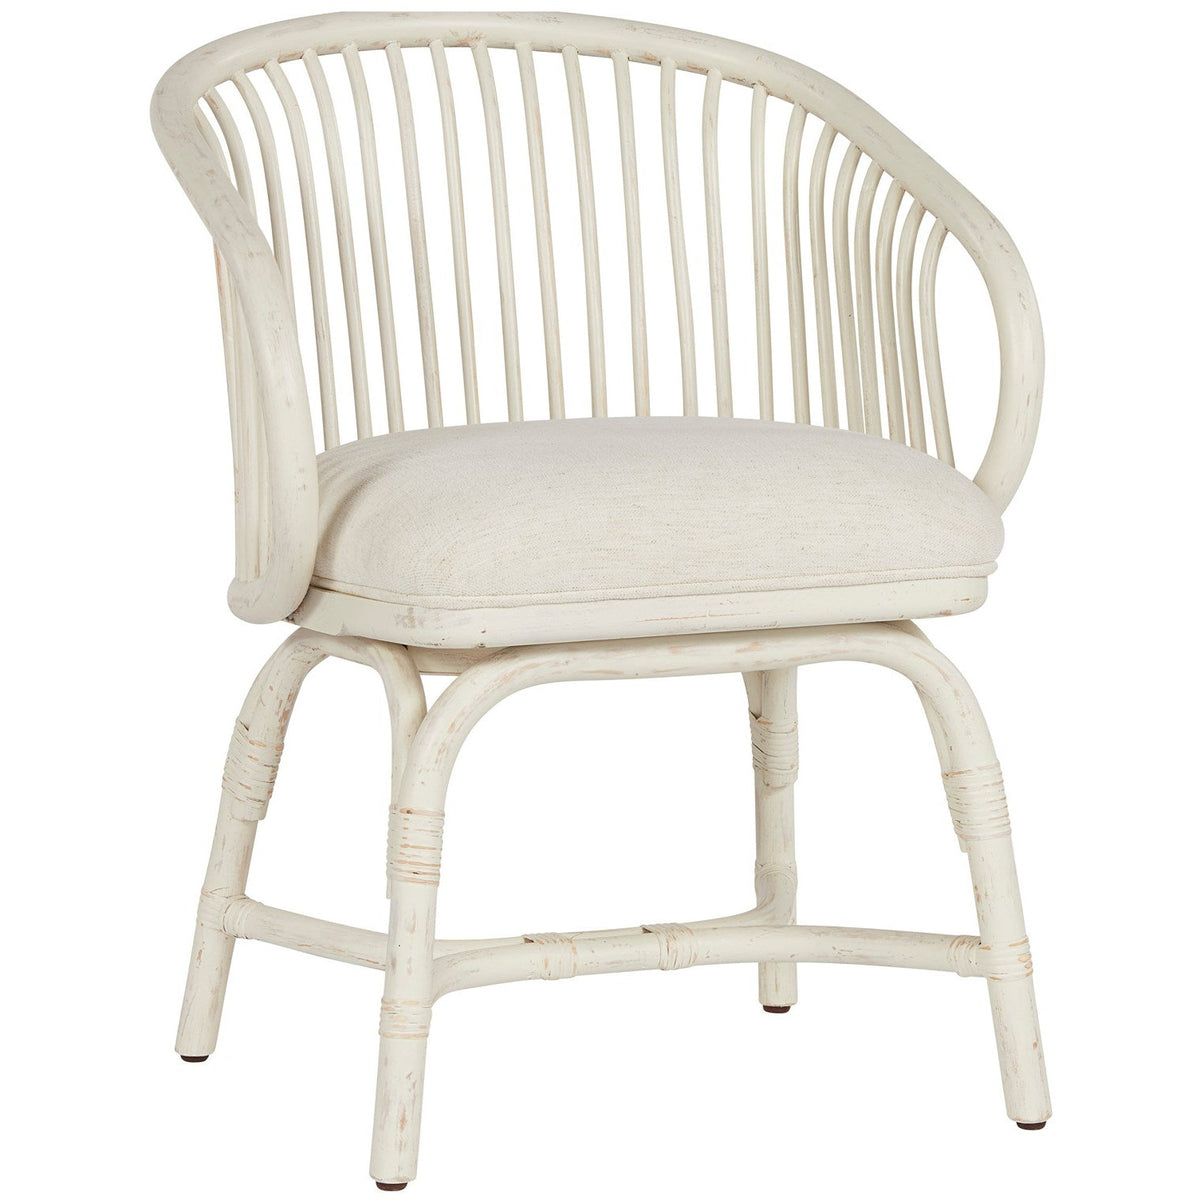 Aruba Rattan Chair - Be Bold Furniture